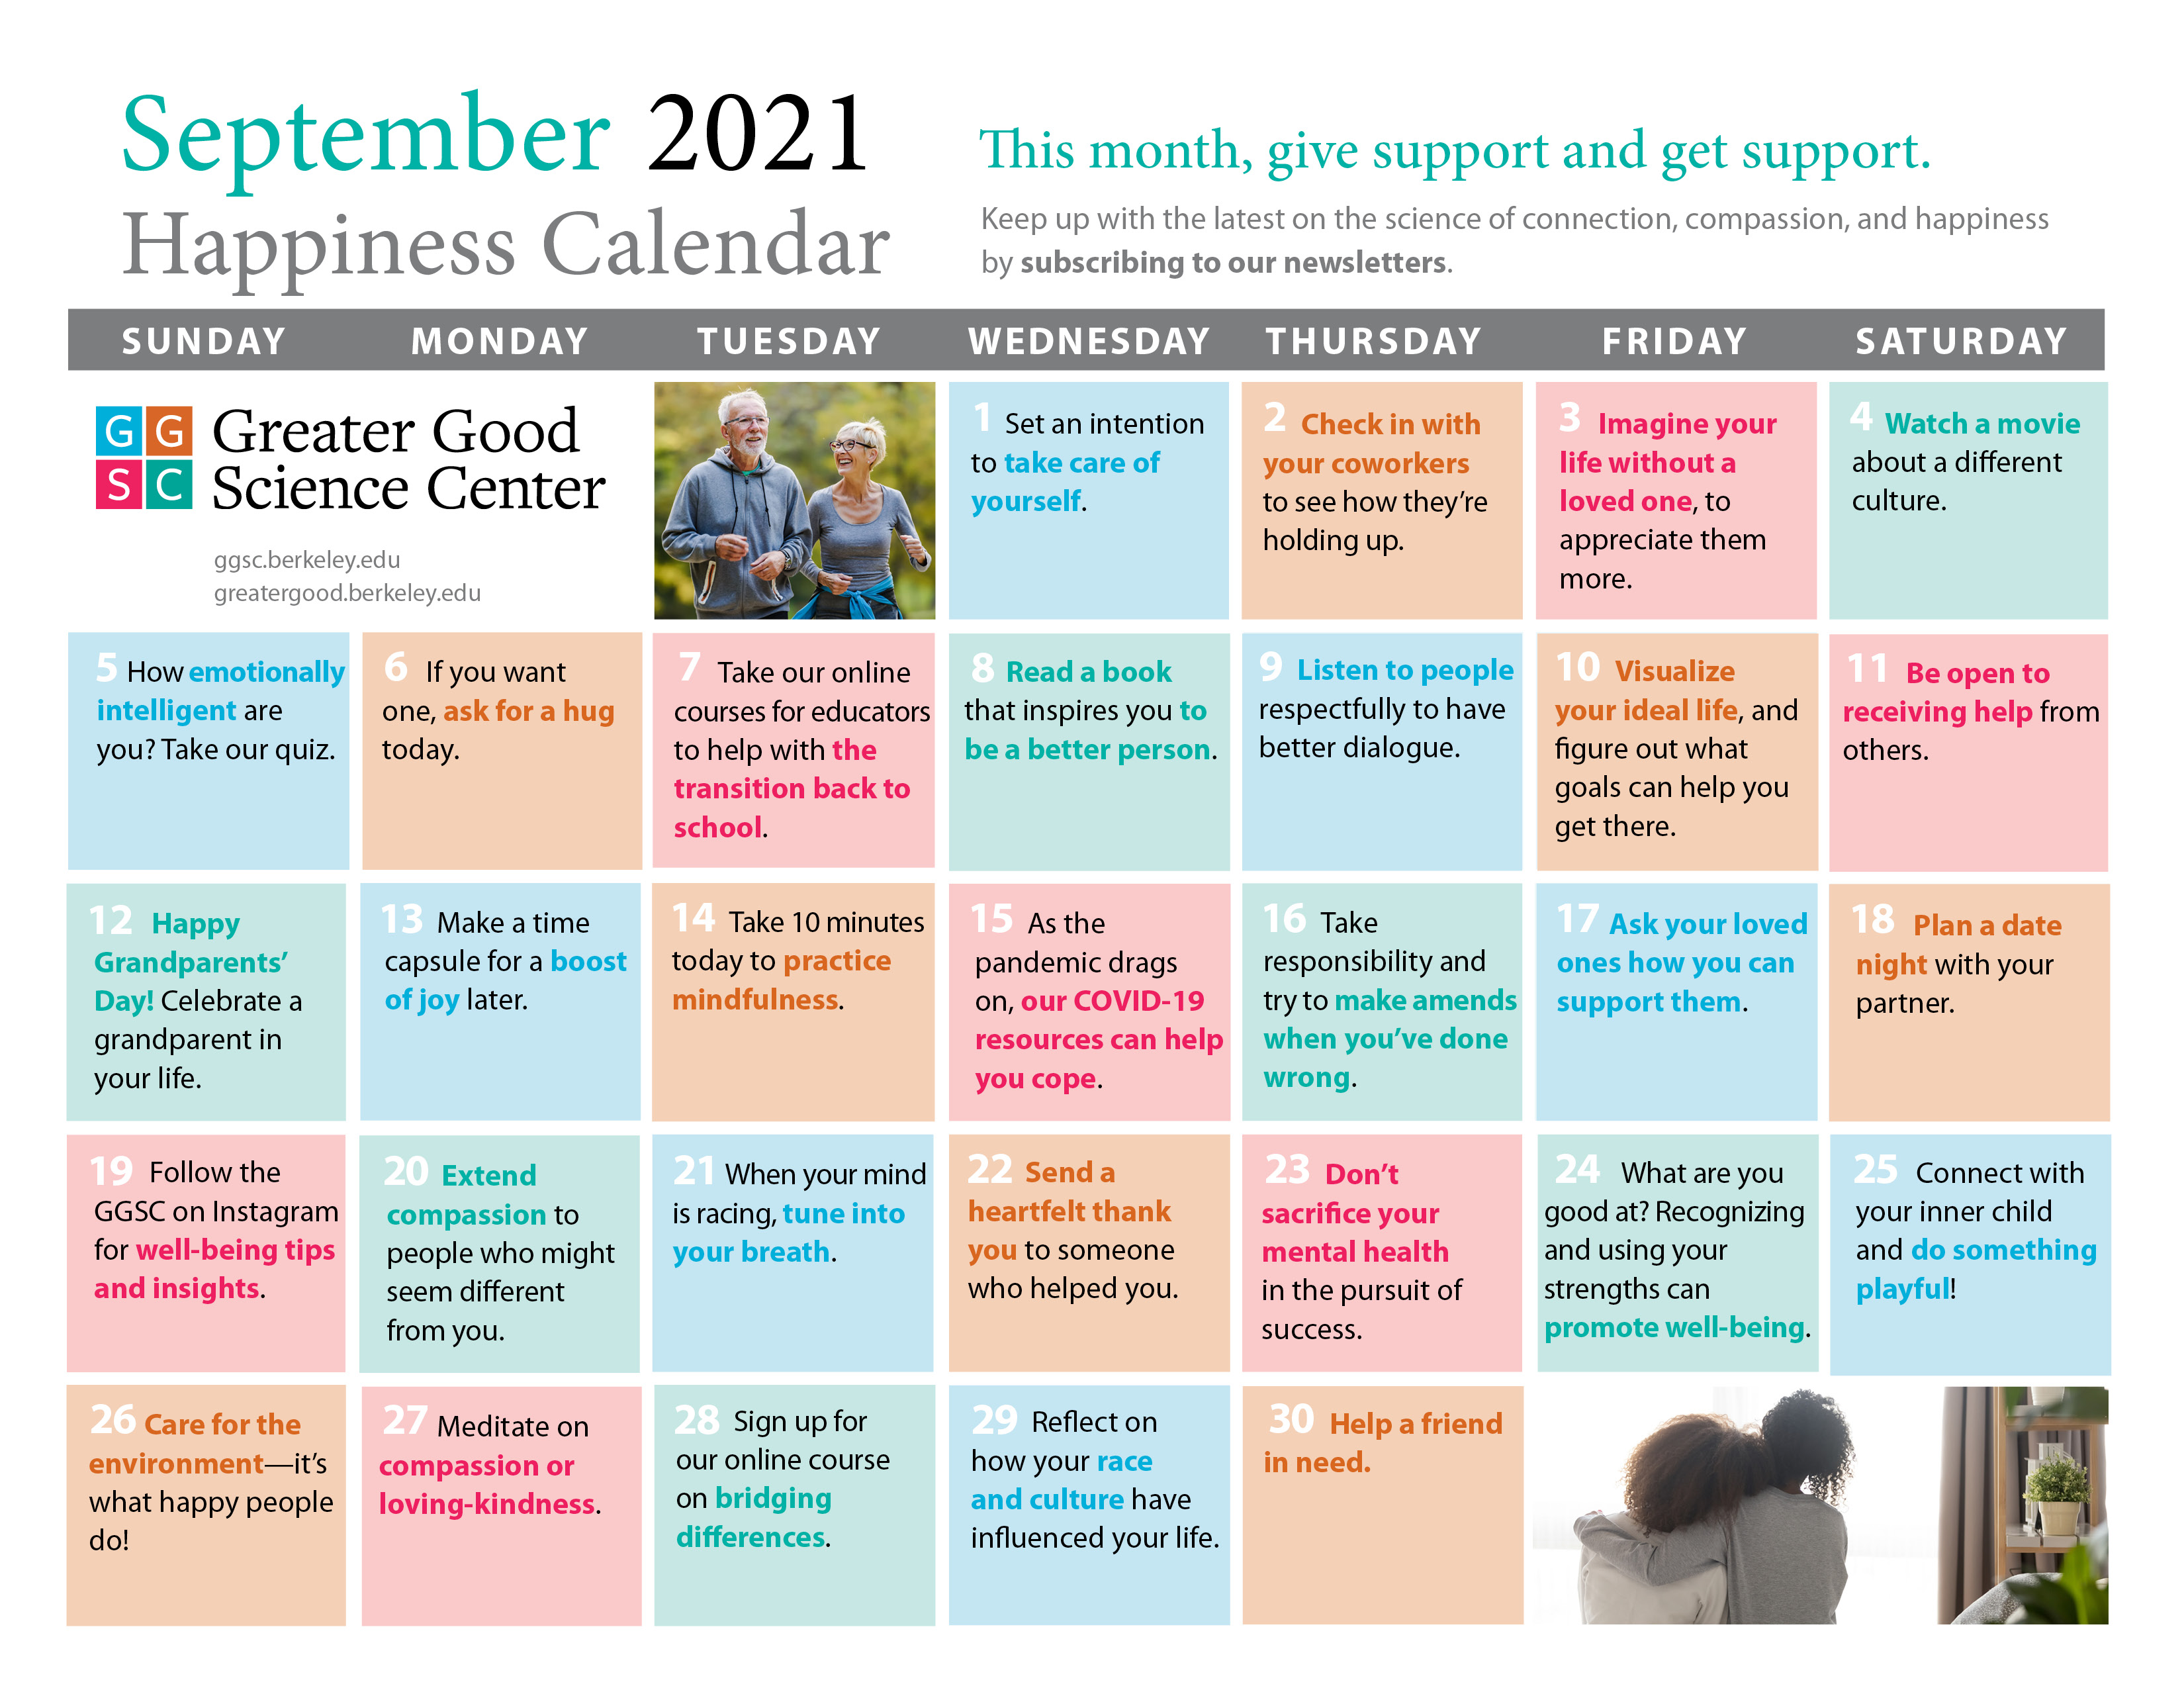 September happiness calendar